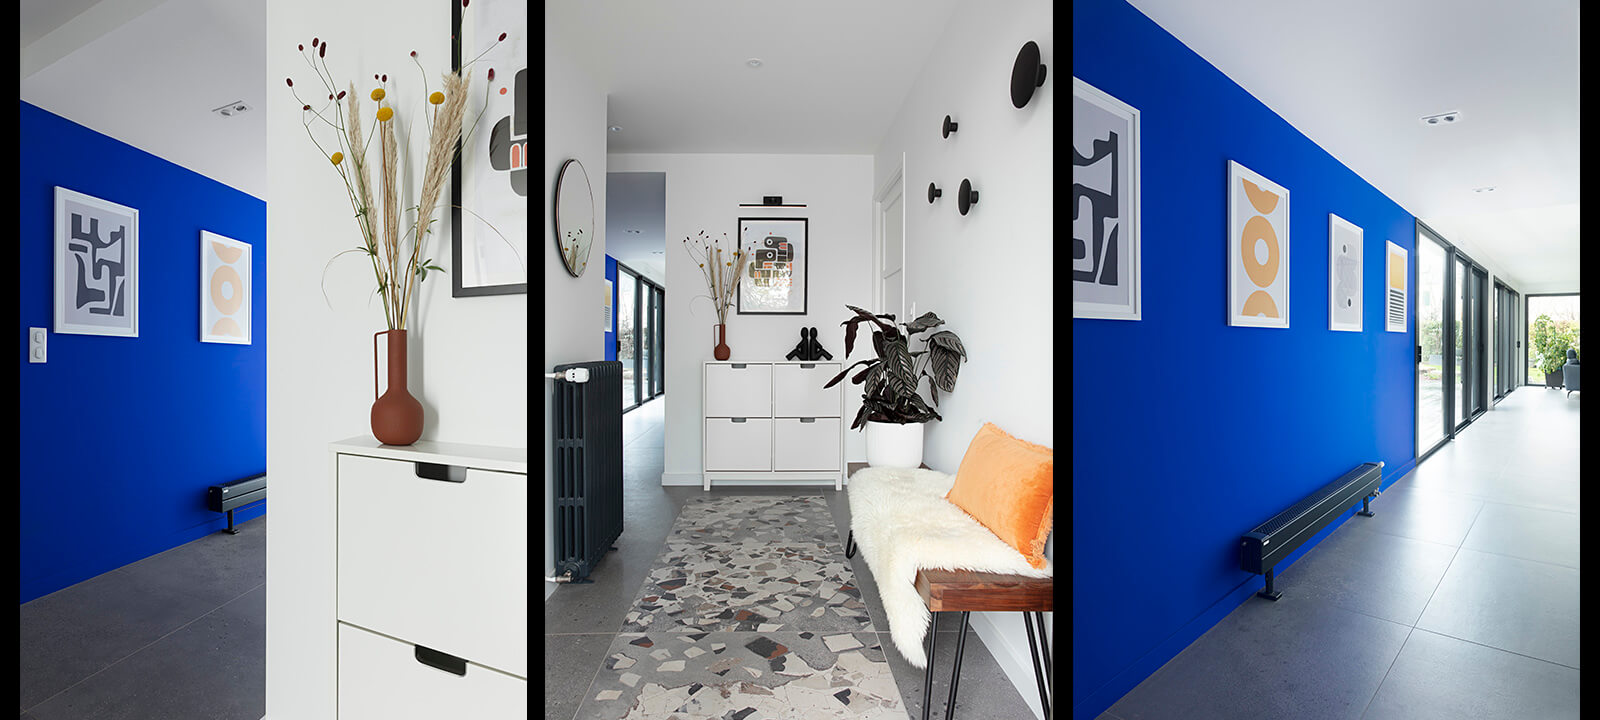 reportage photo d'intérieur entrée et mur bleu klein dégagement -capturée par gwenaelle Hoyet photographe specialisée en  Architecture et décoration intérieure nantes